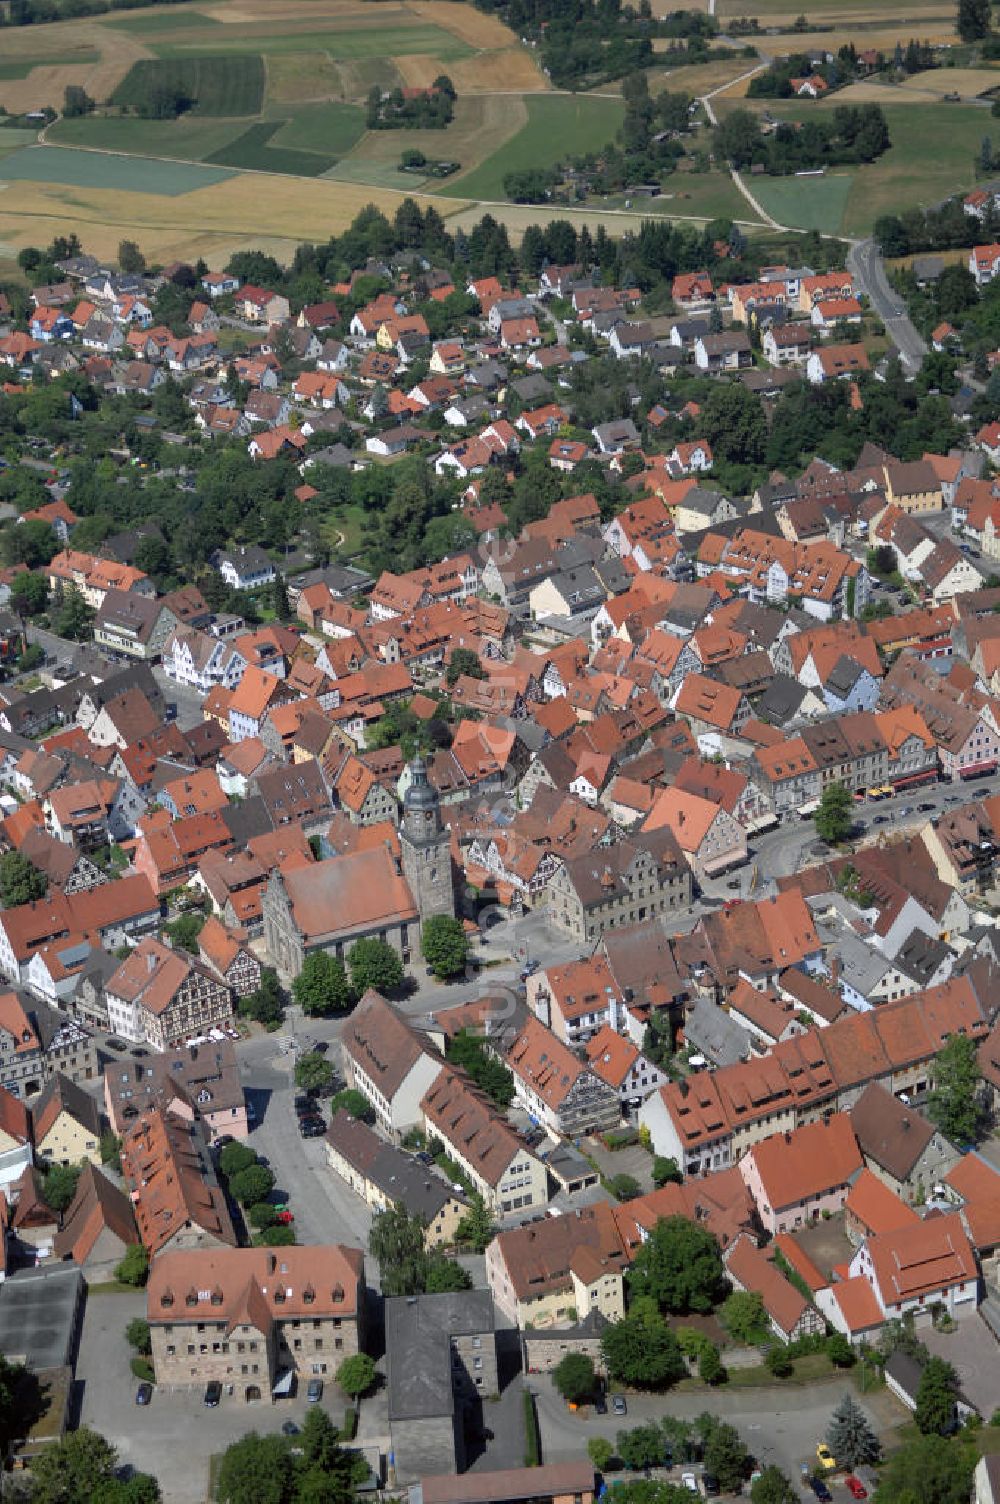 Altdorf von oben - Blick auf Altdorf bei Nürnberg mit der evangelischen Stadtirche